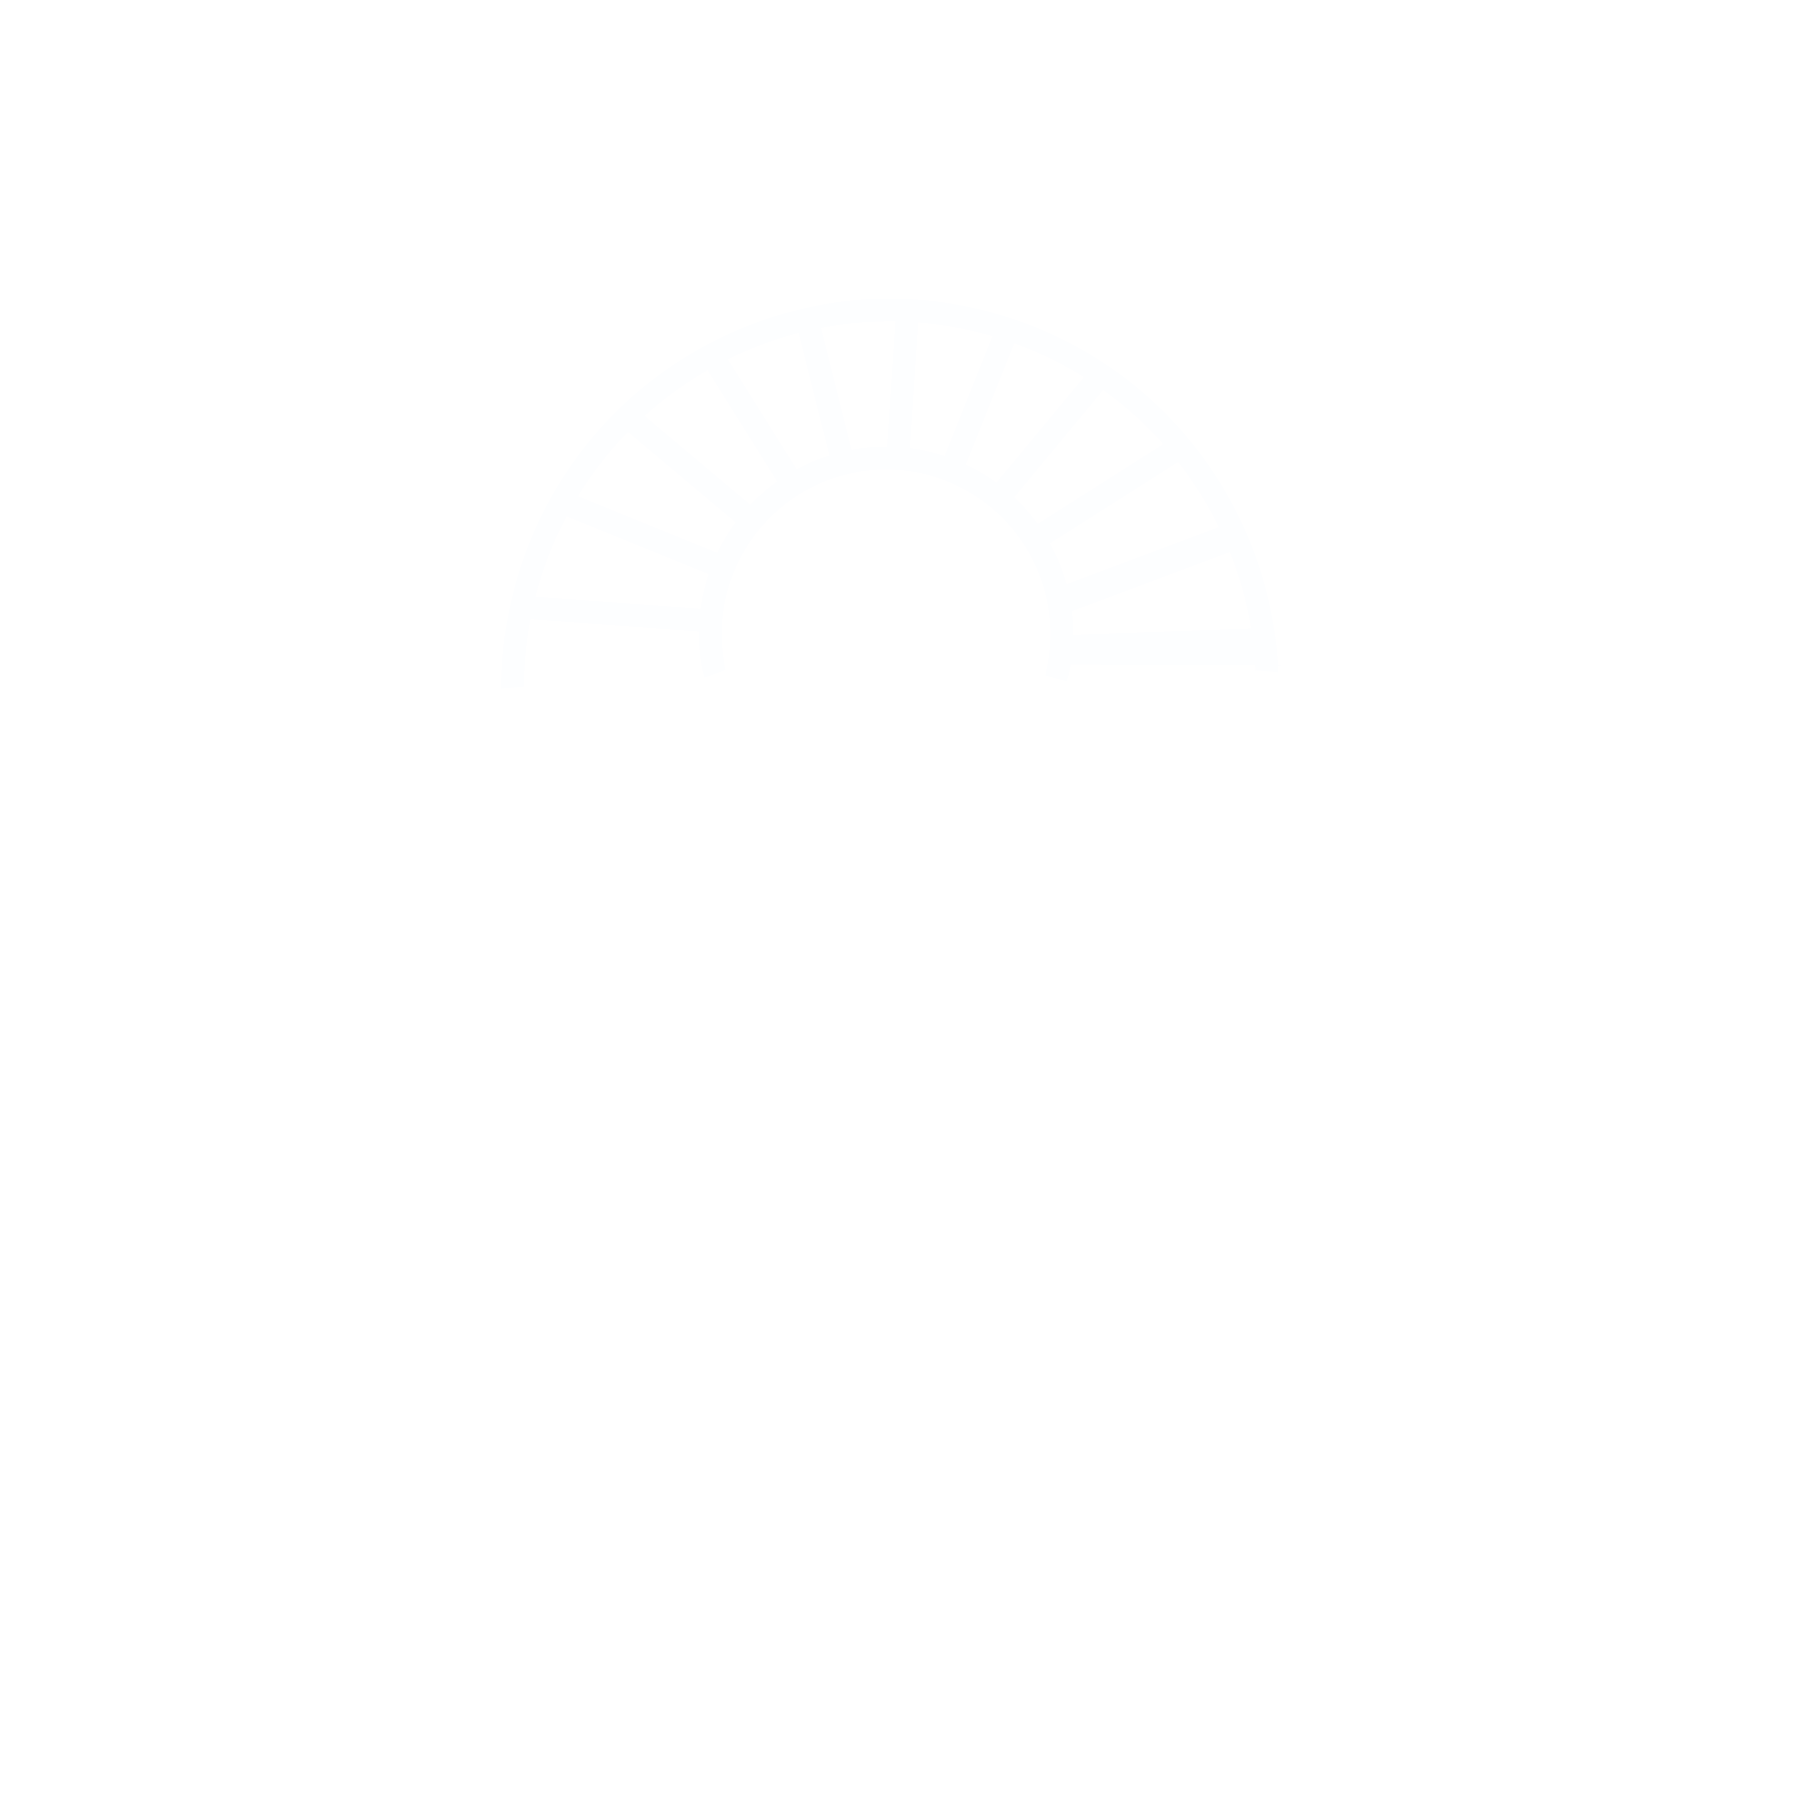 Bluewater Village Resort